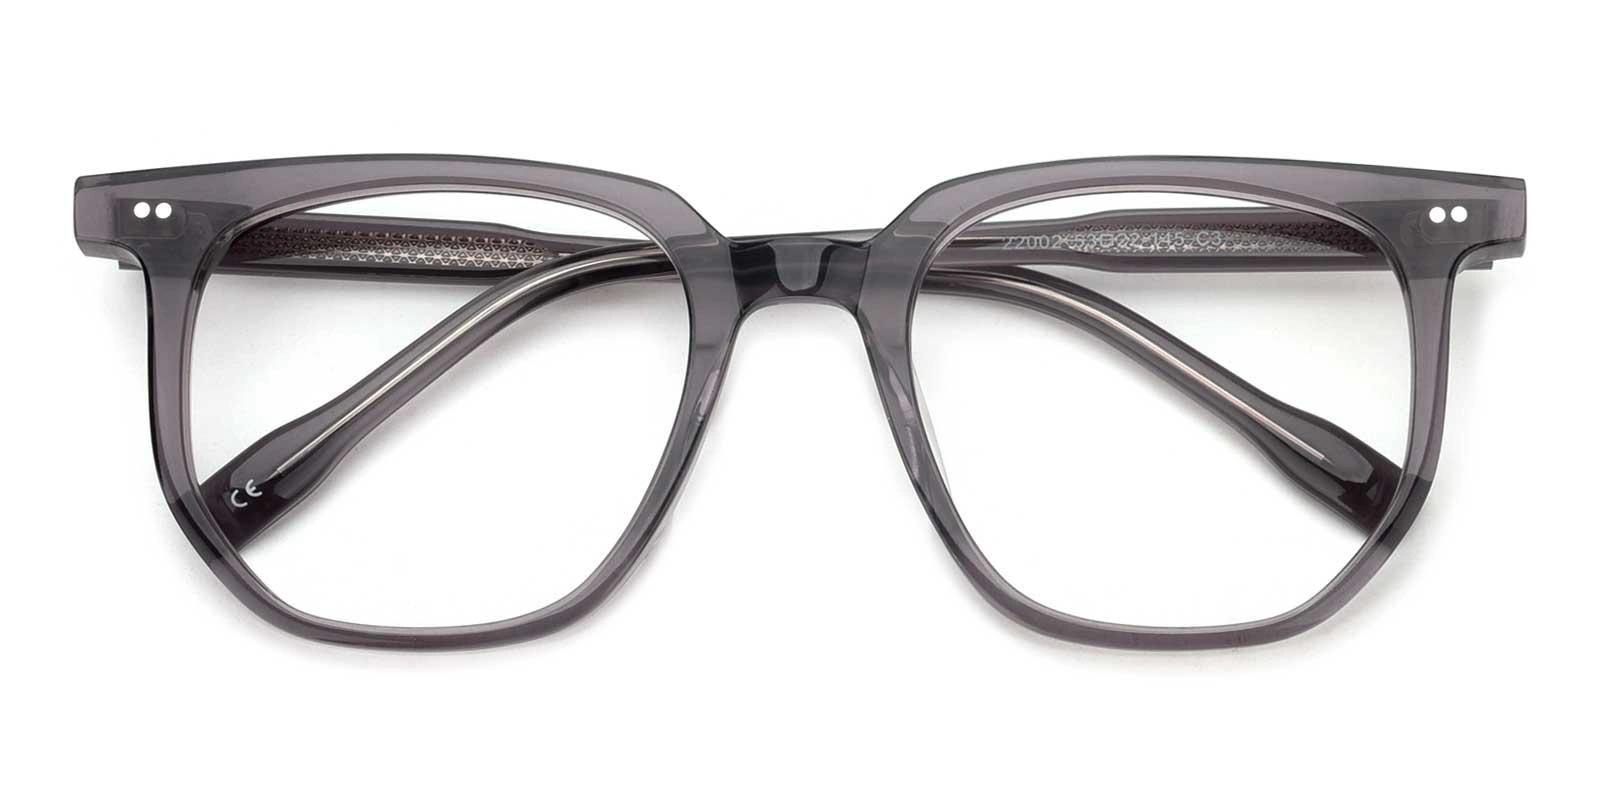 Lysette Gray Acetate Eyeglasses , UniversalBridgeFit Frames from ABBE Glasses